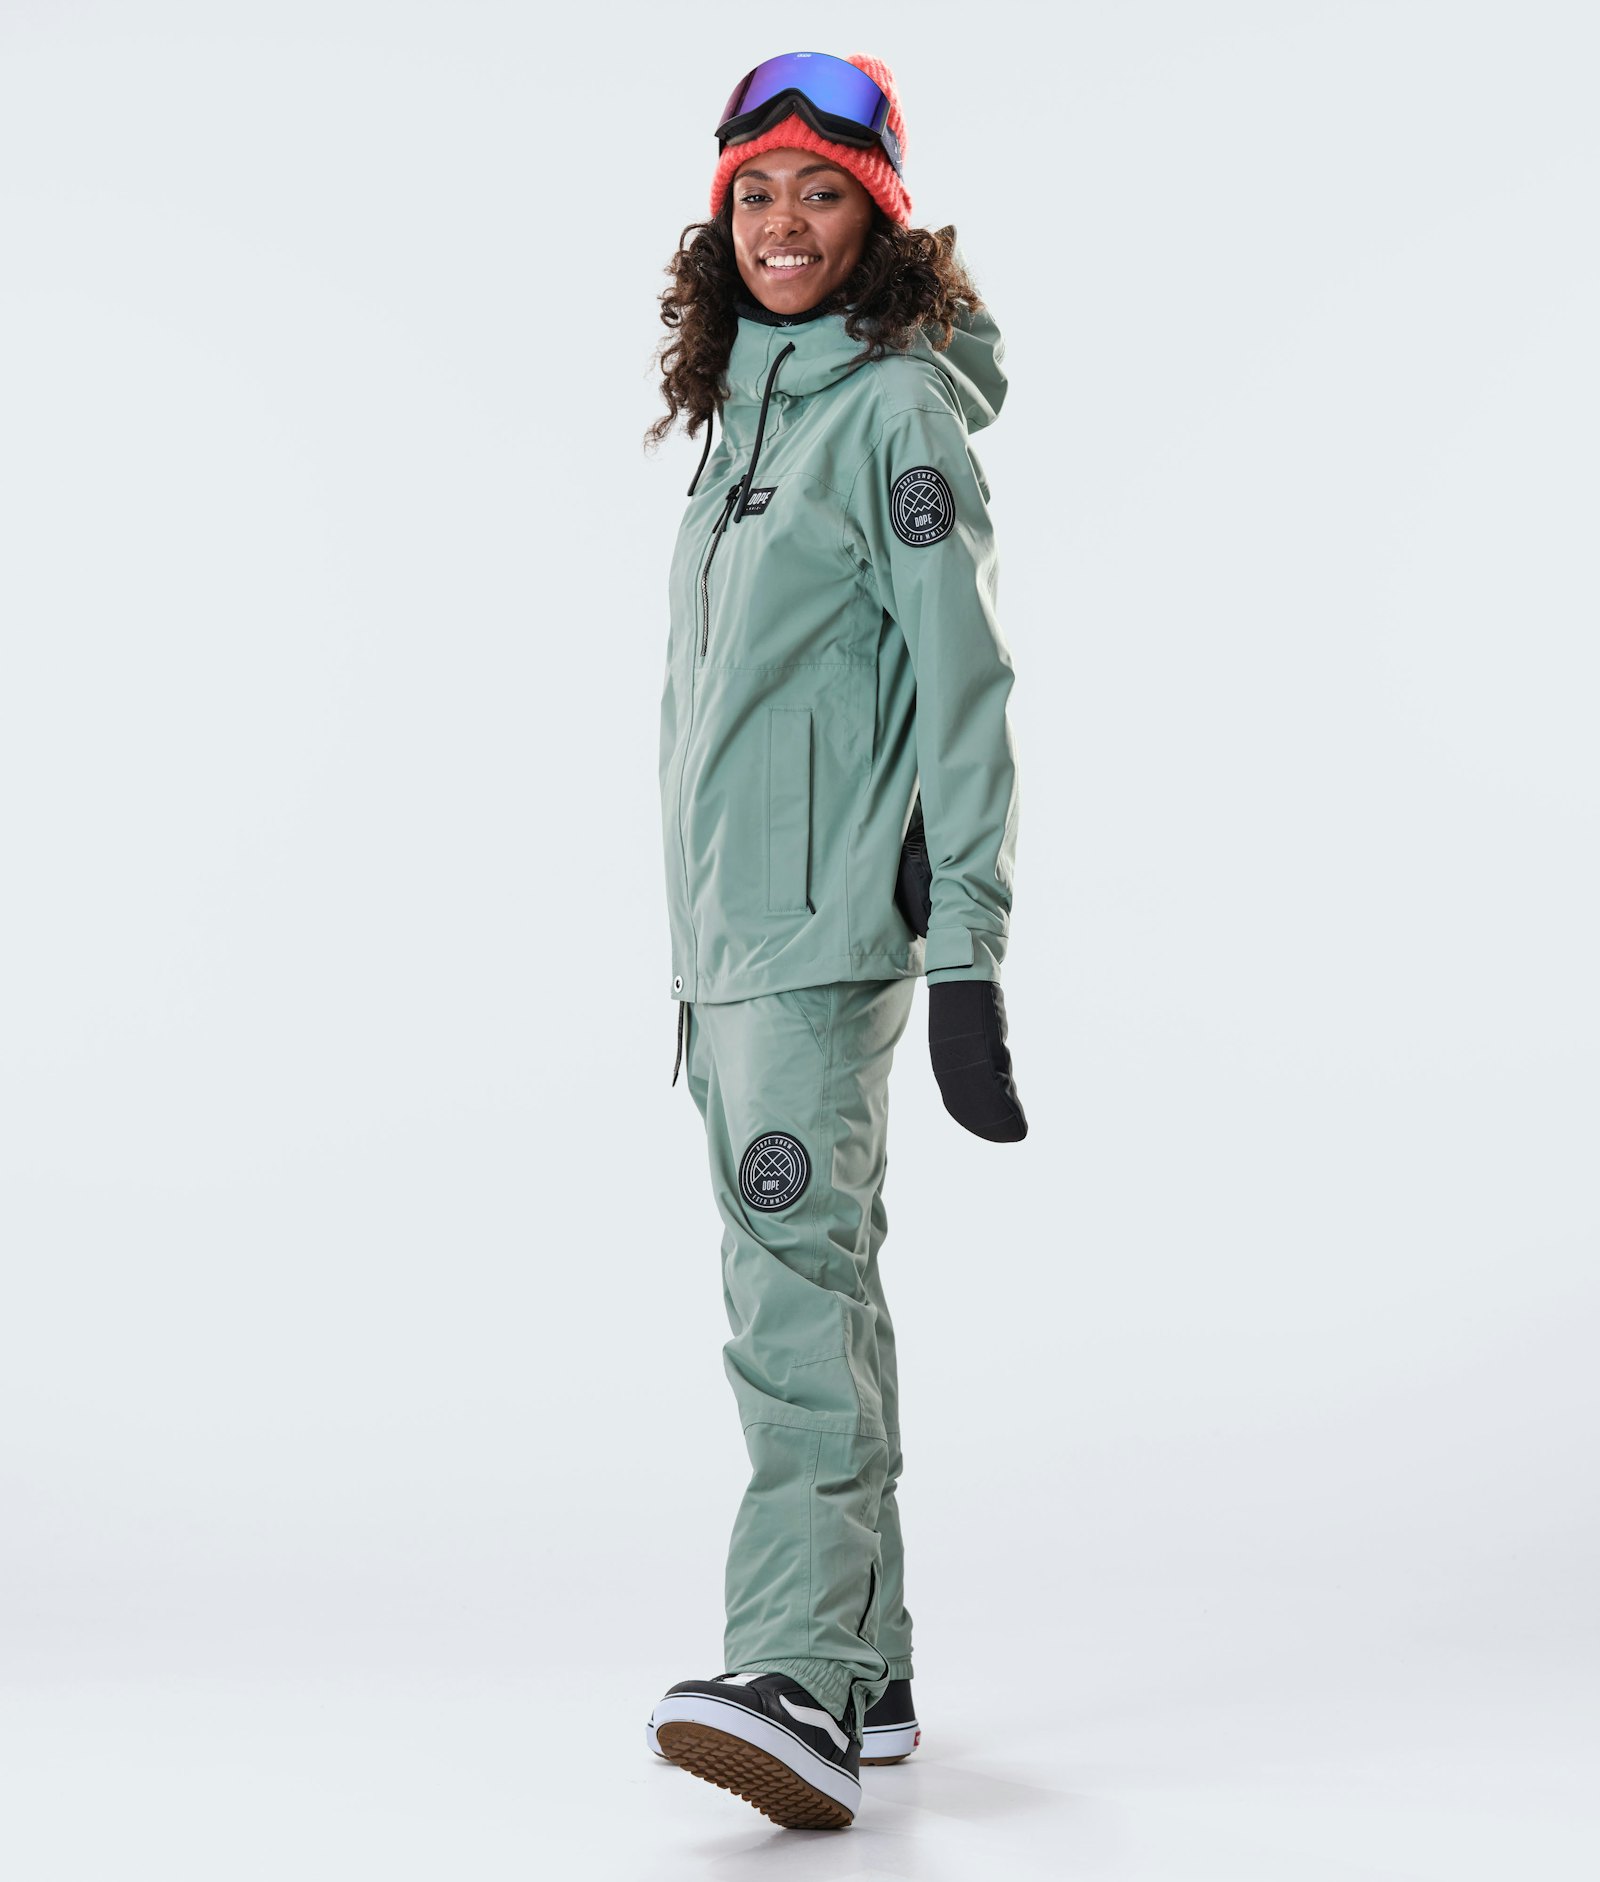 Blizzard W Full Zip 2020 Veste Snowboard Femme Faded Green